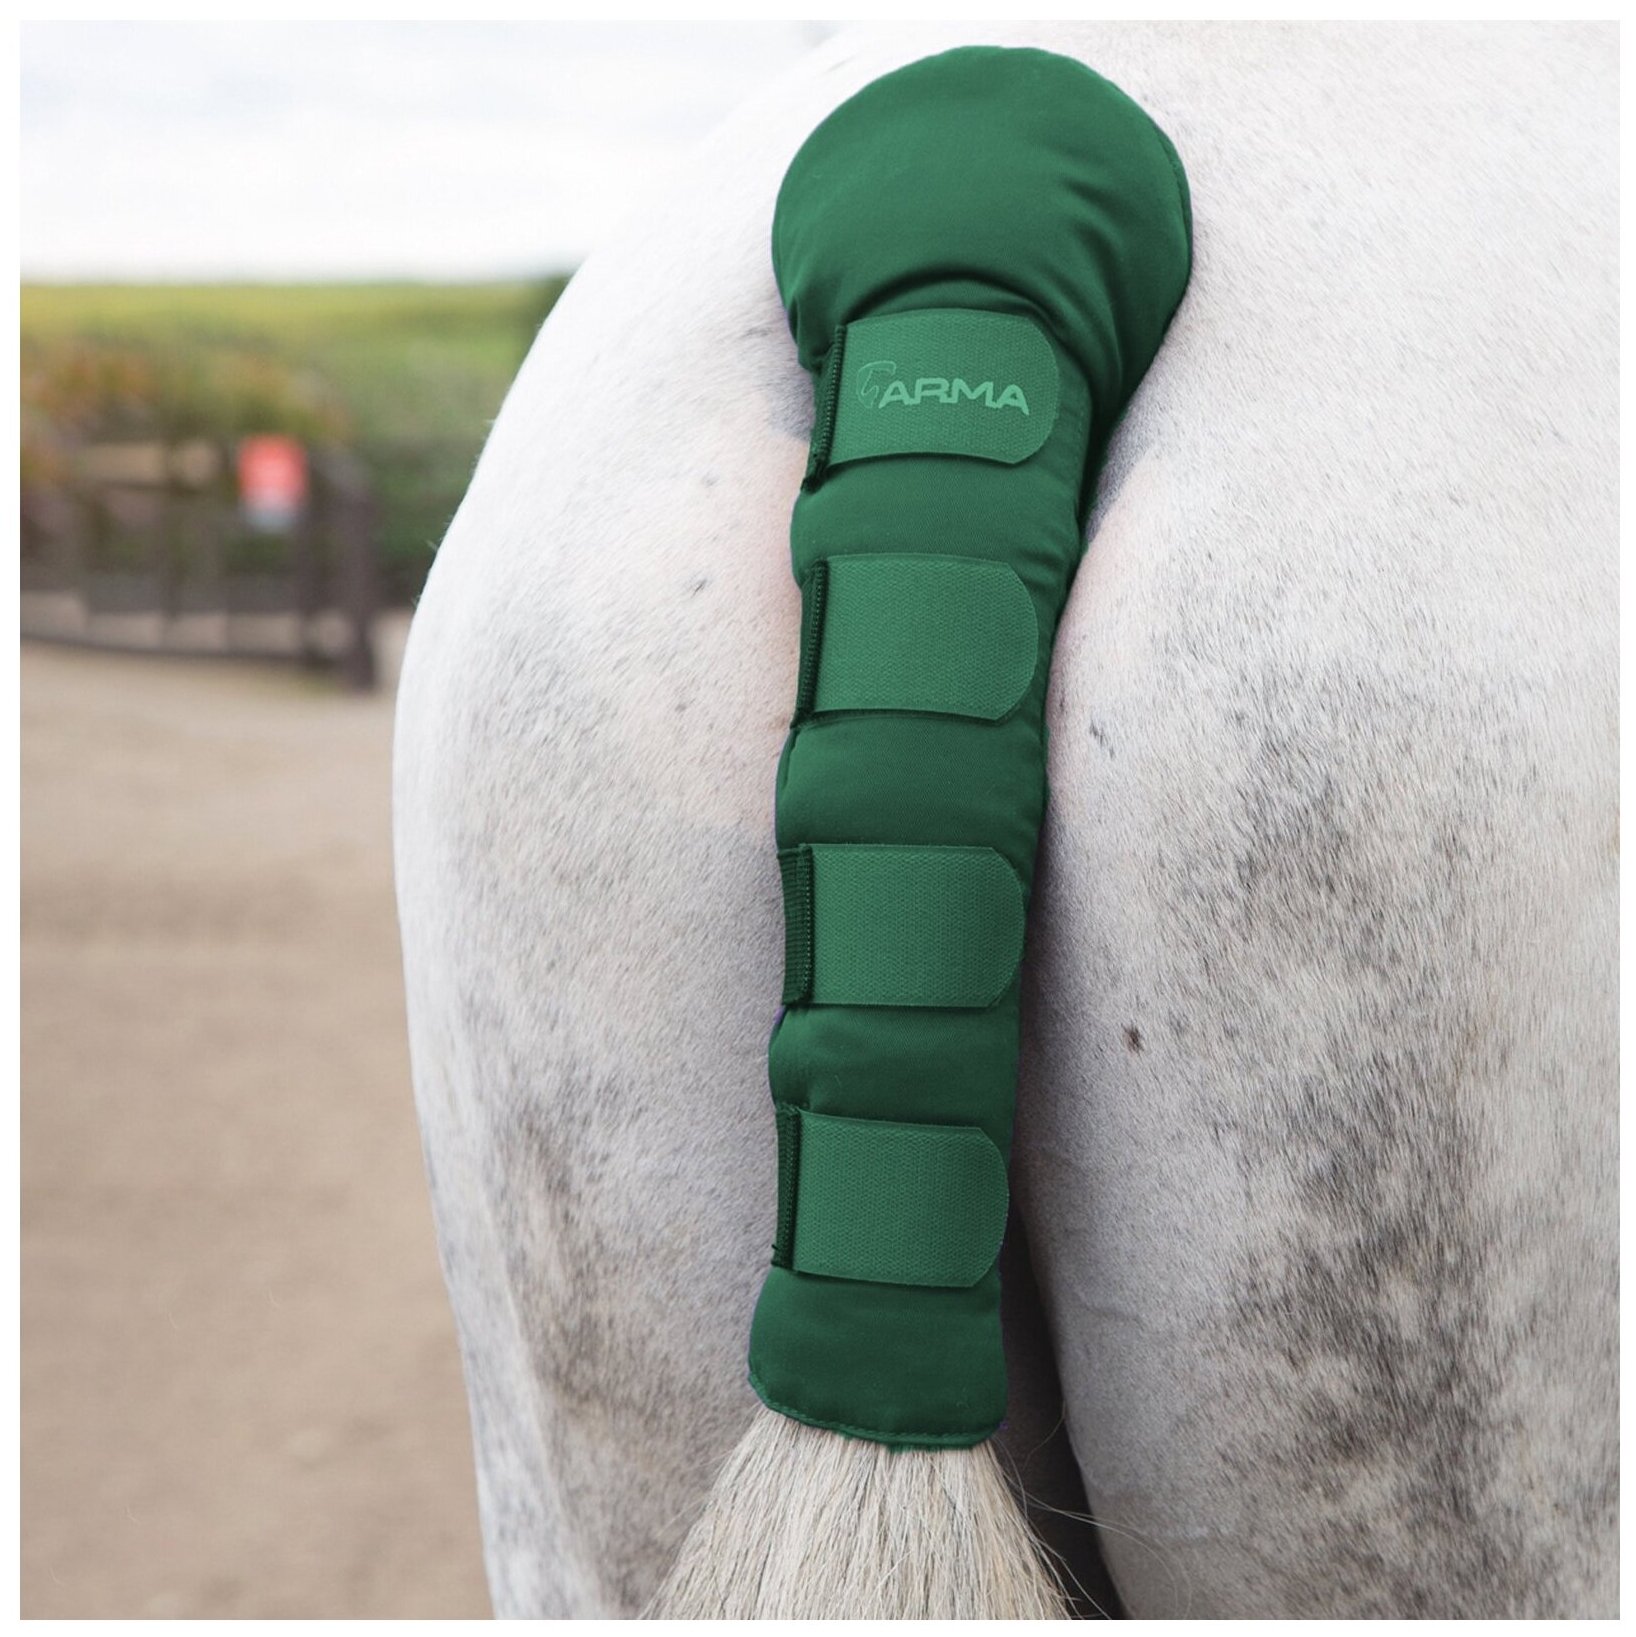 Нахвостник транспортировочный для лошади SHIRES ARMA "Comfort", зелёный (Великобритания) - фотография № 1